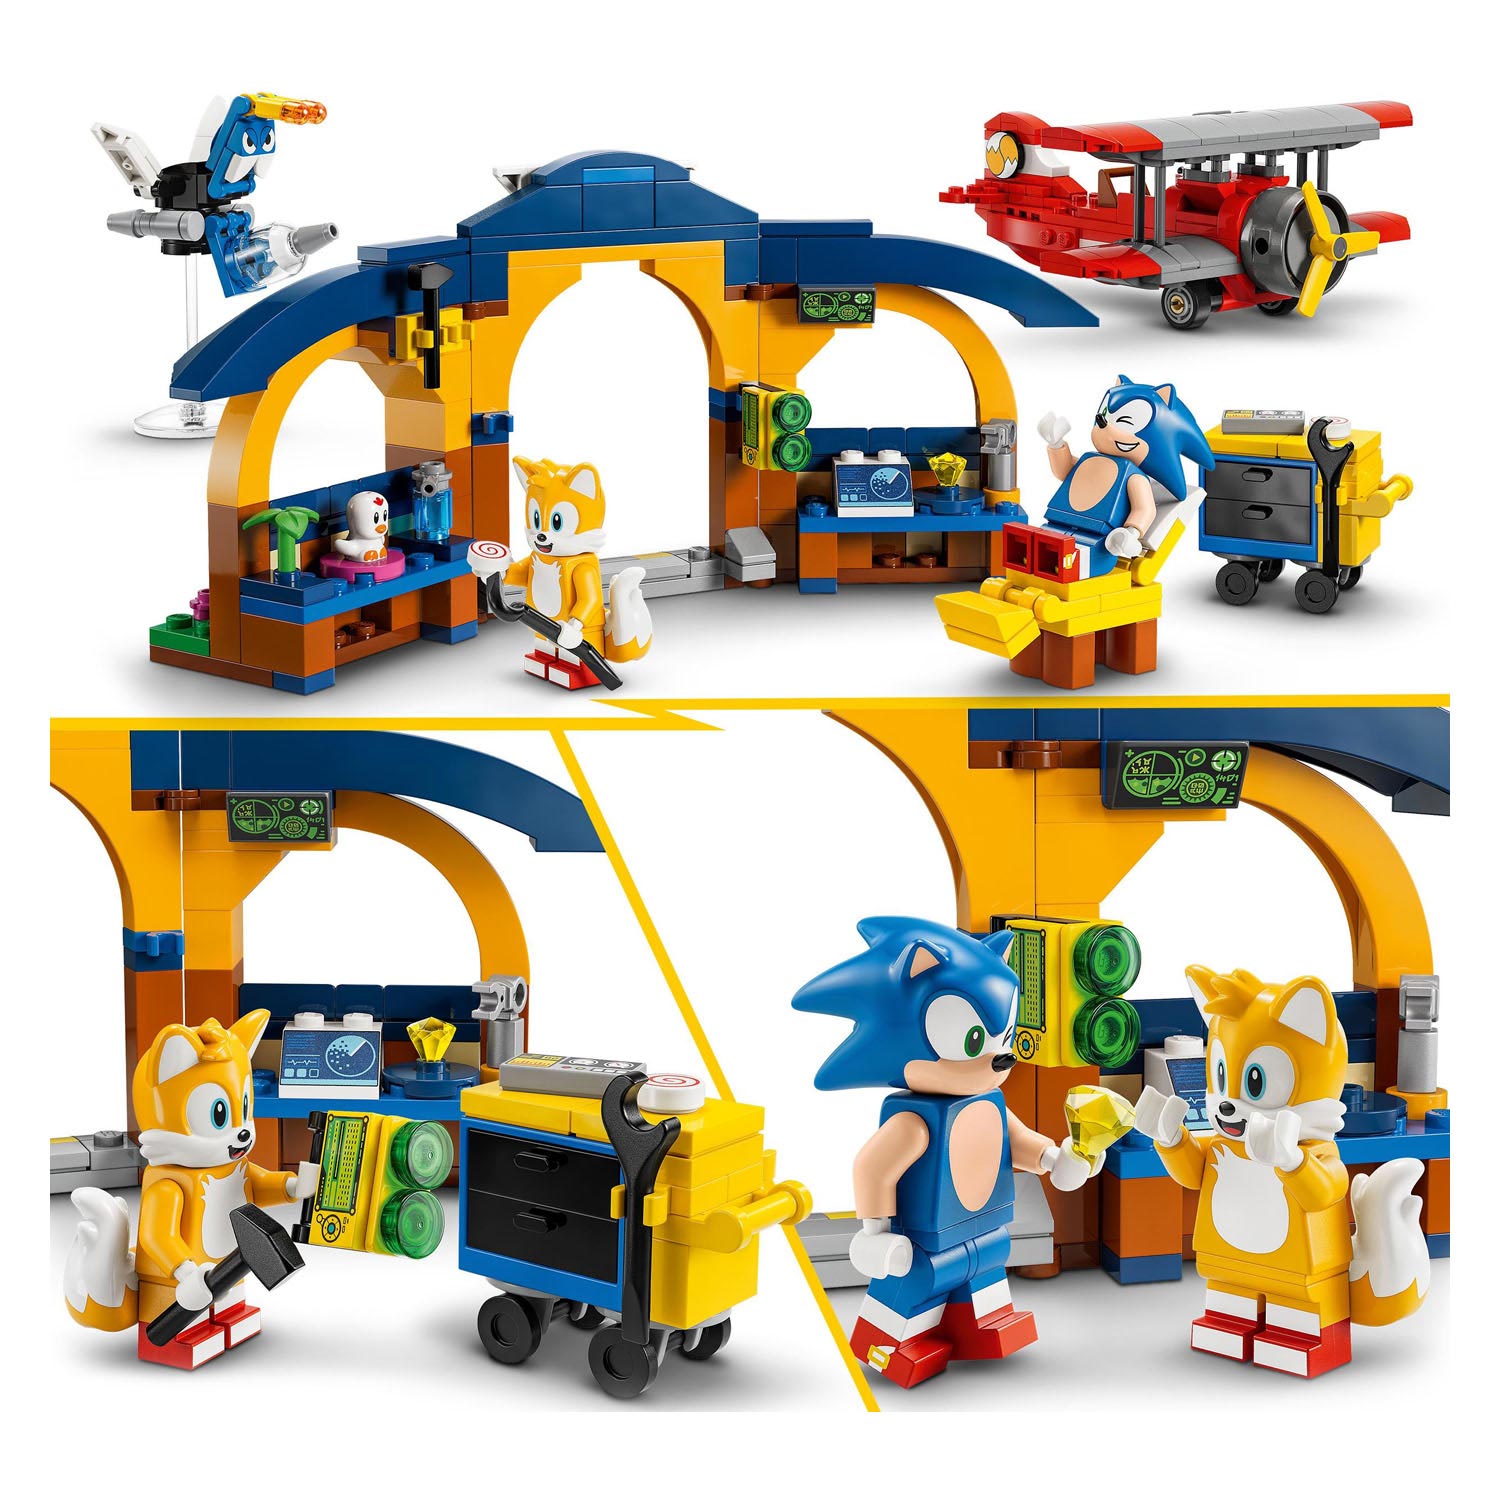 LEGO Sonic 76991 Tails Workshop und Tornado-Flugzeug